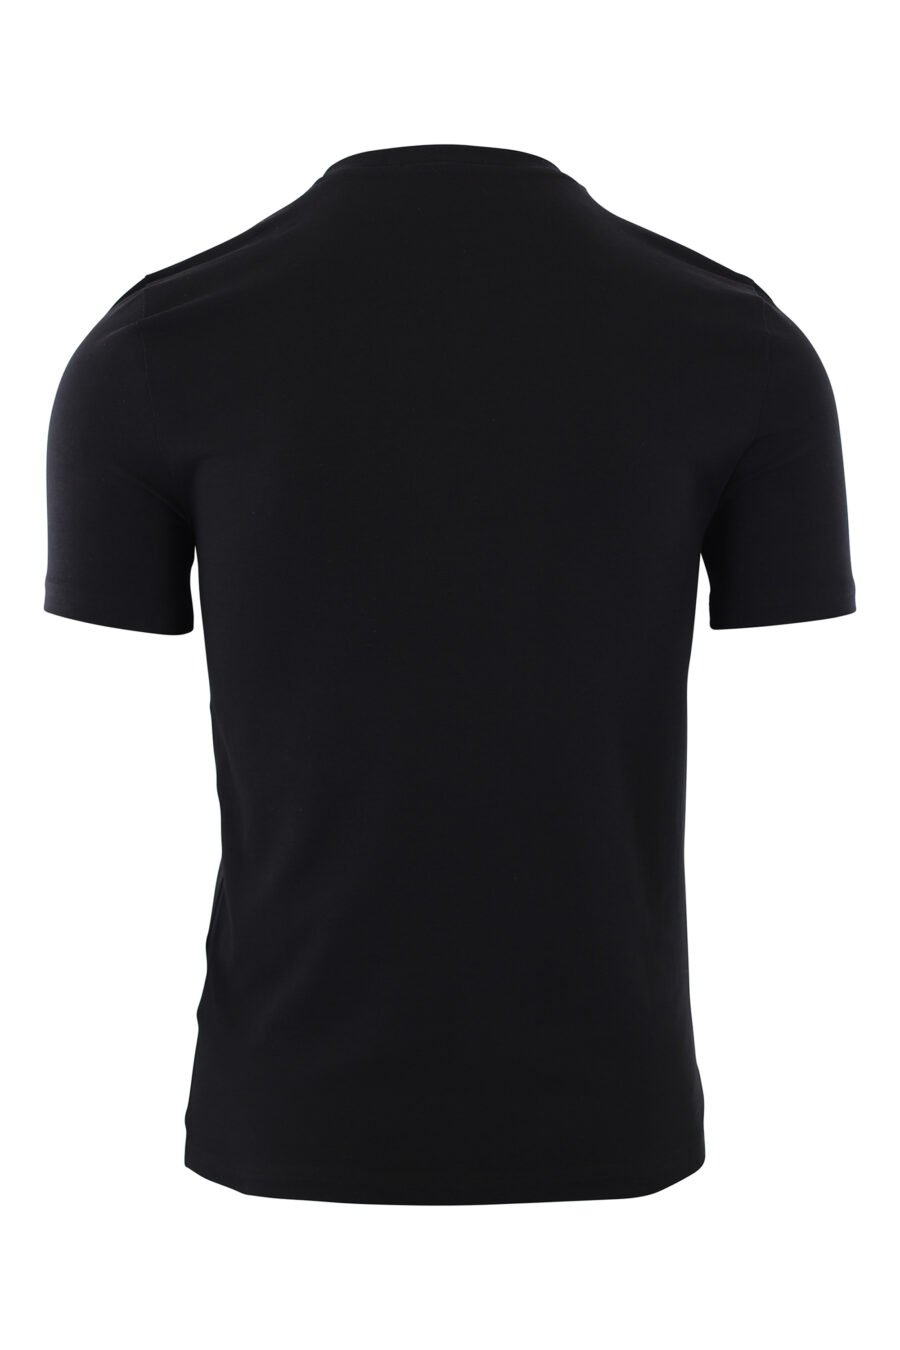 Schwarzes T-Shirt mit doppeltem Maxi-Smiley-Logo - IMG 2426